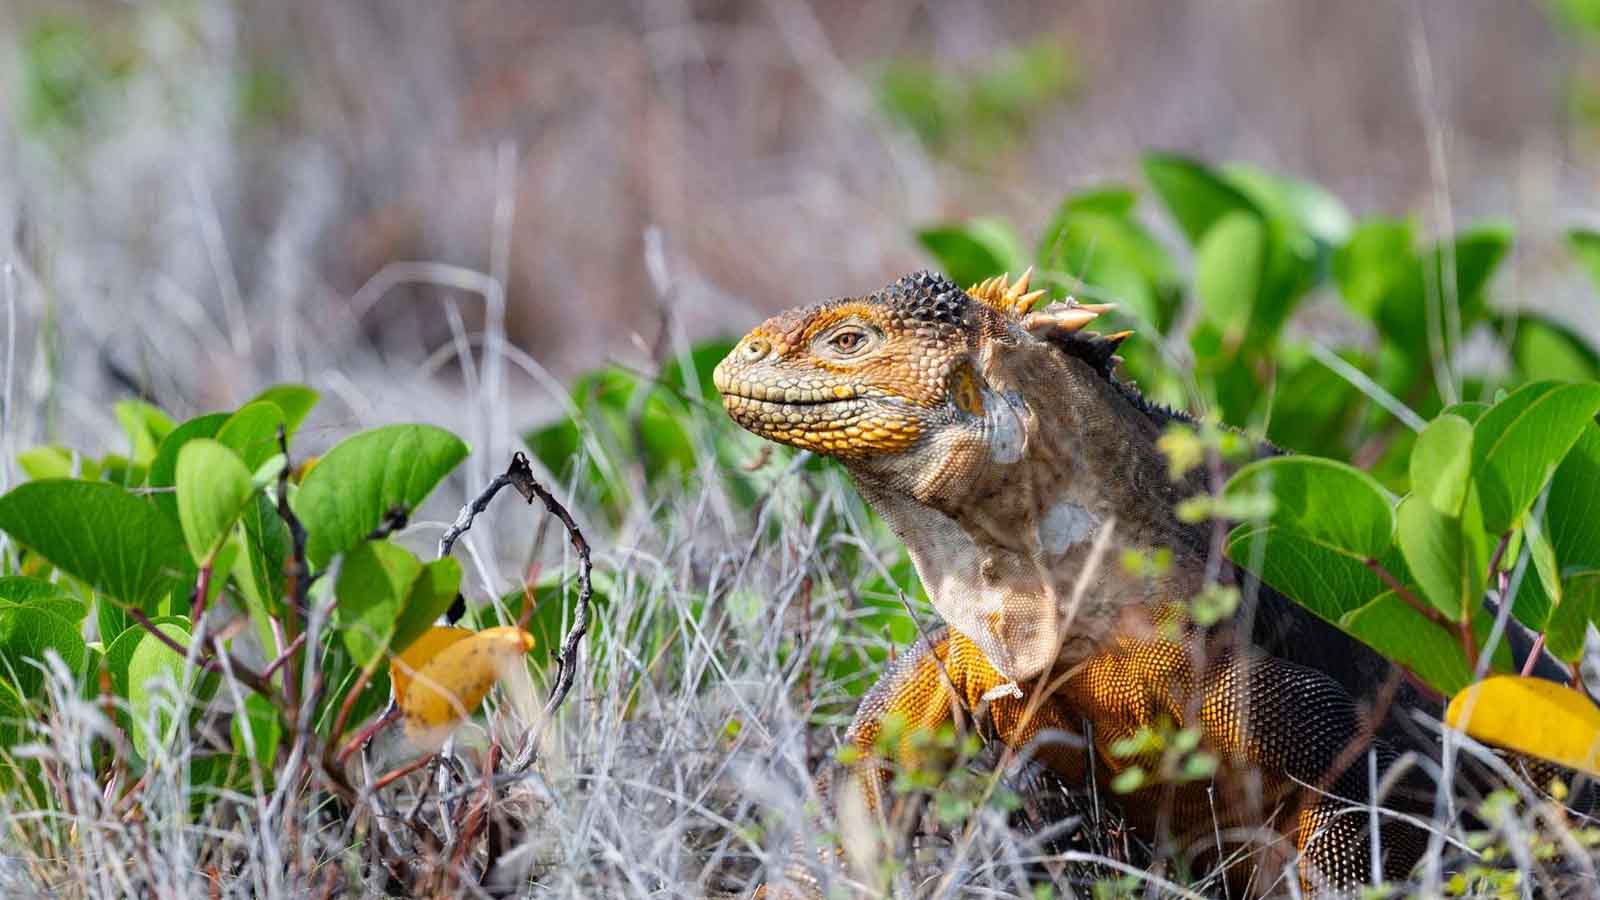 Galapagos Land Iguanas